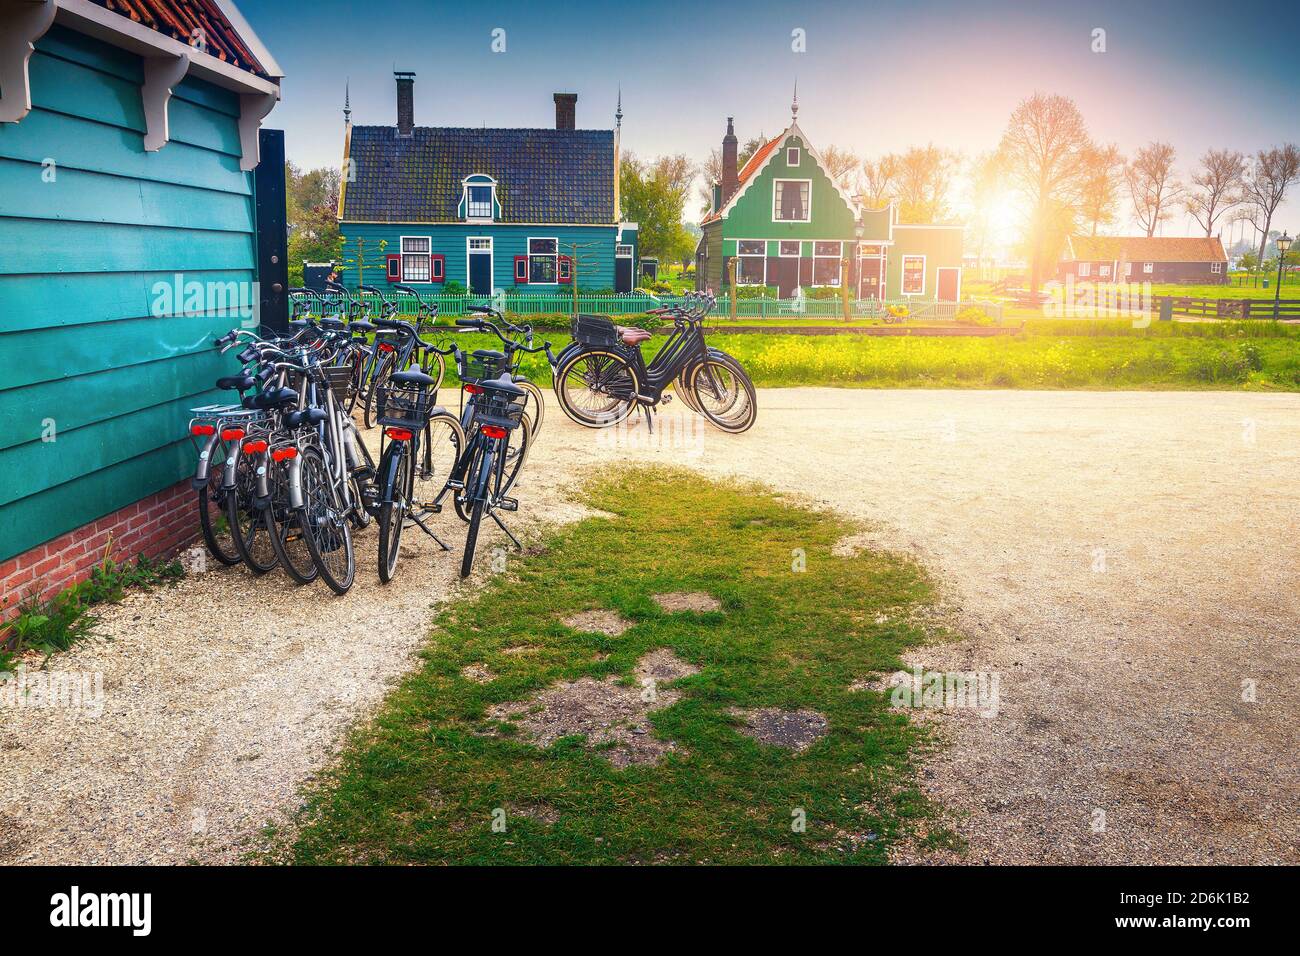 Super emplacement touristique avec des maisons traditionnelles en bois à l'aube. Vélos garés près de la maison en bois au lever du soleil, Zaanse Schans, pays-Bas, Europe Banque D'Images